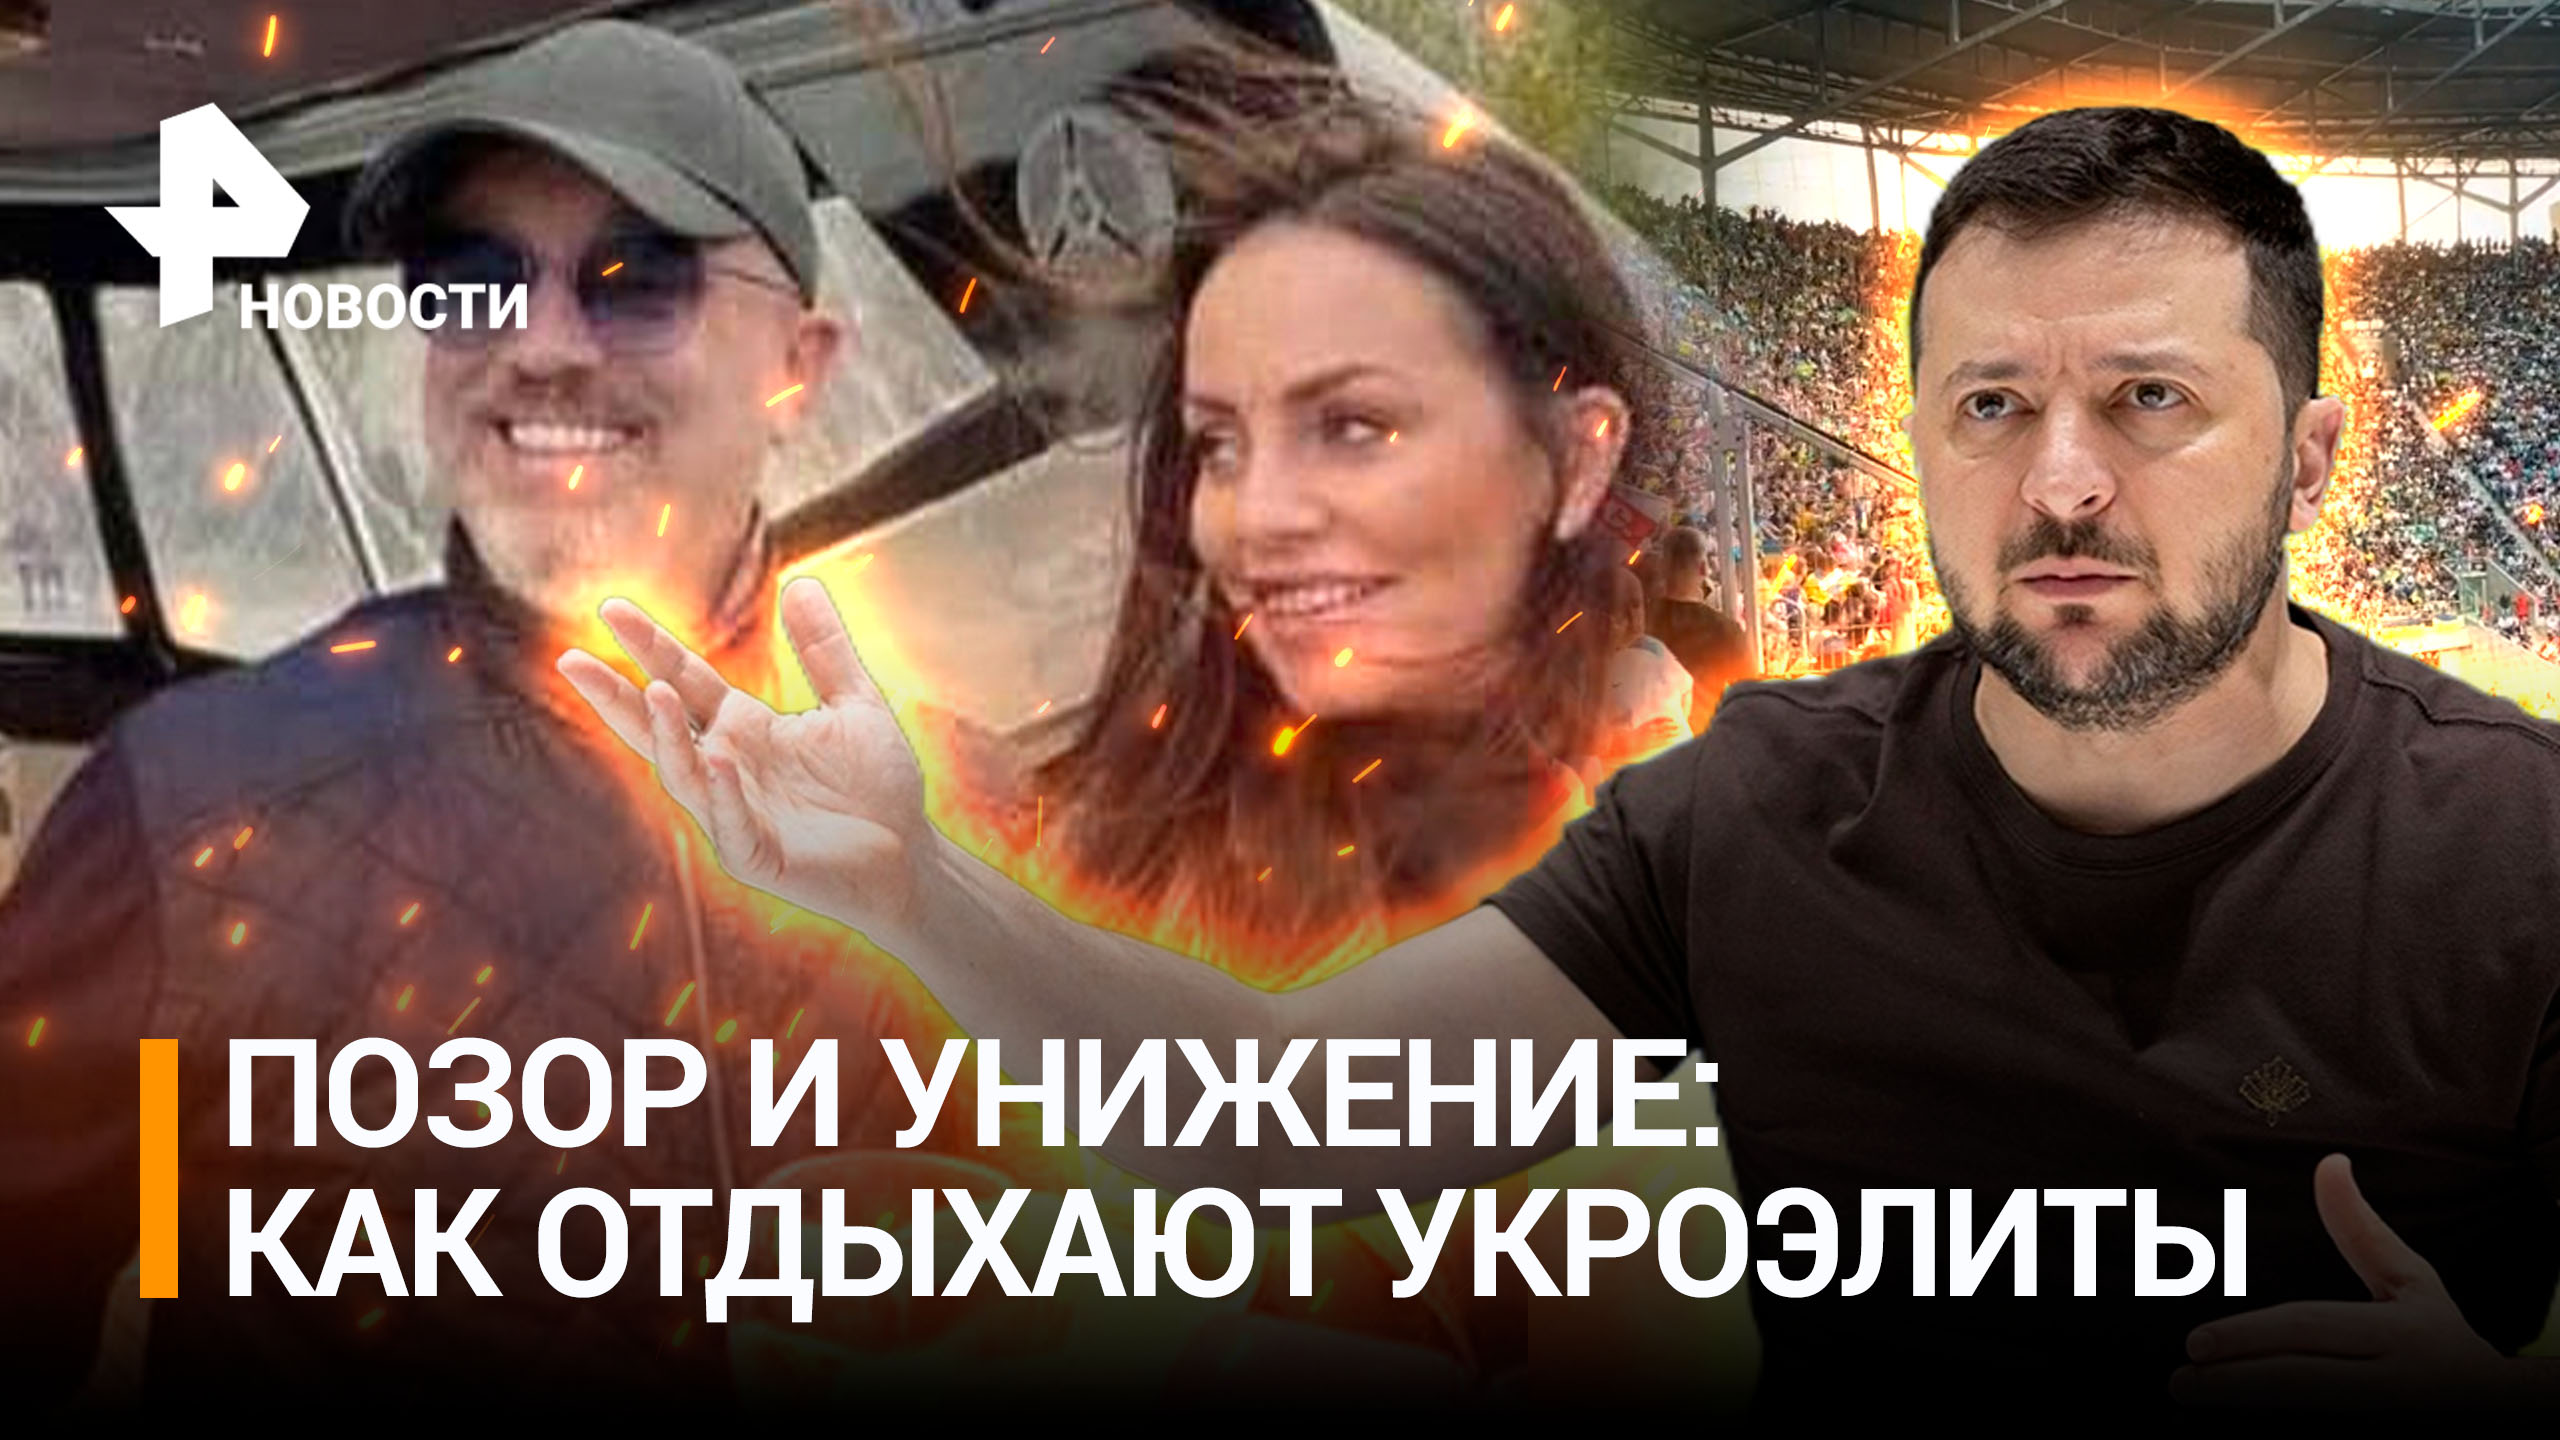 Богатые и знаменитые украинцы: Резников пьет на яхте с брюнеткой, а Кулеба занят рэкетом